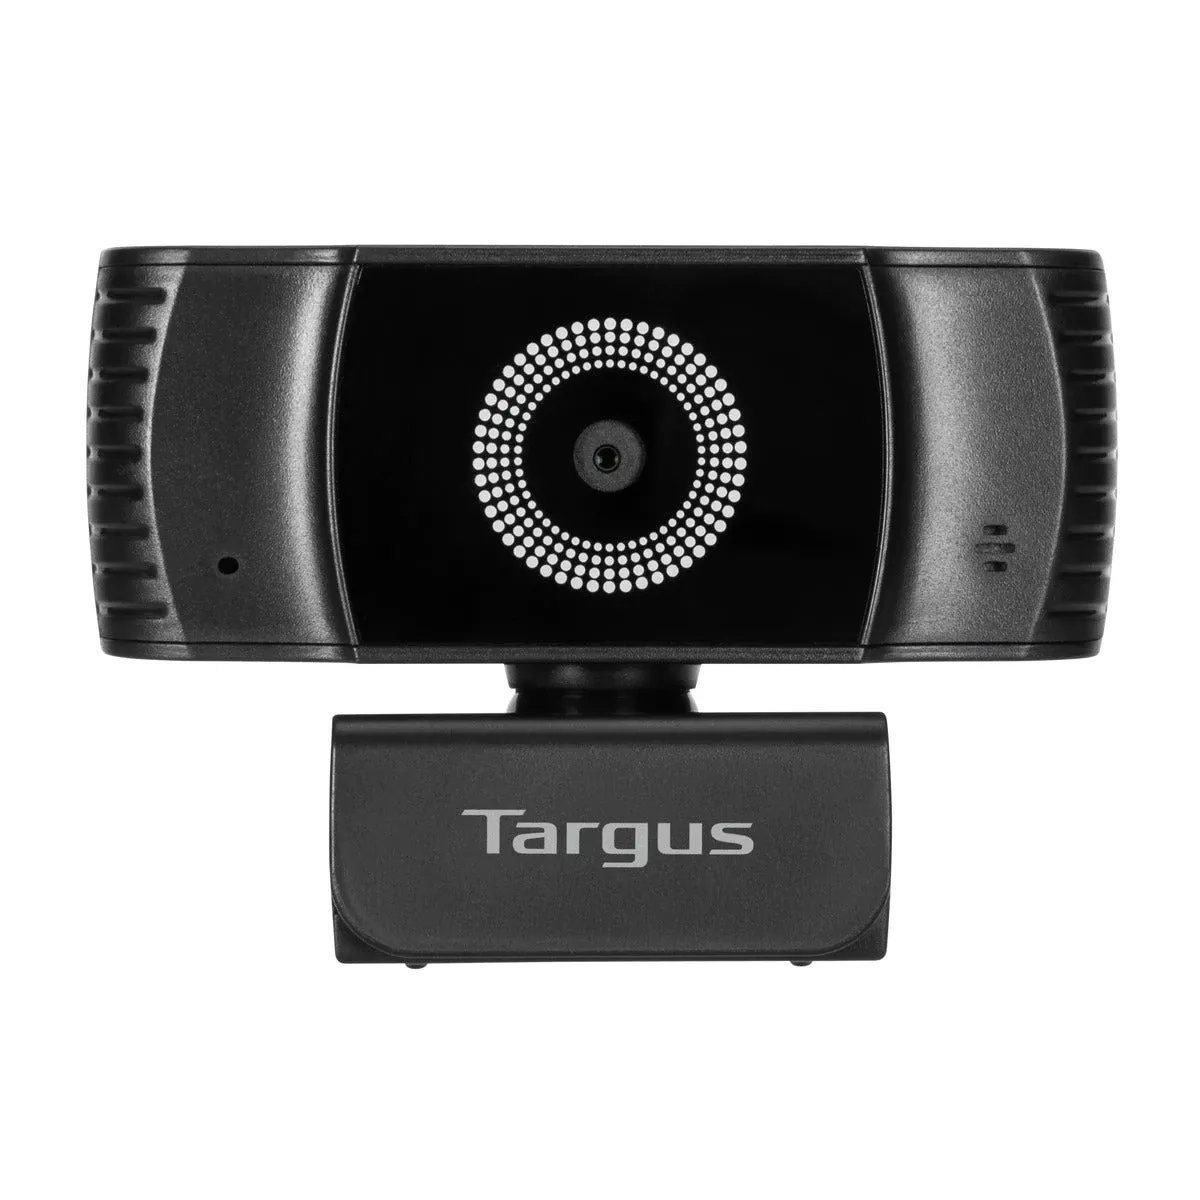 Achat Webcam TARGUS Webcam Plus Full HD 1080p Webcam with Auto